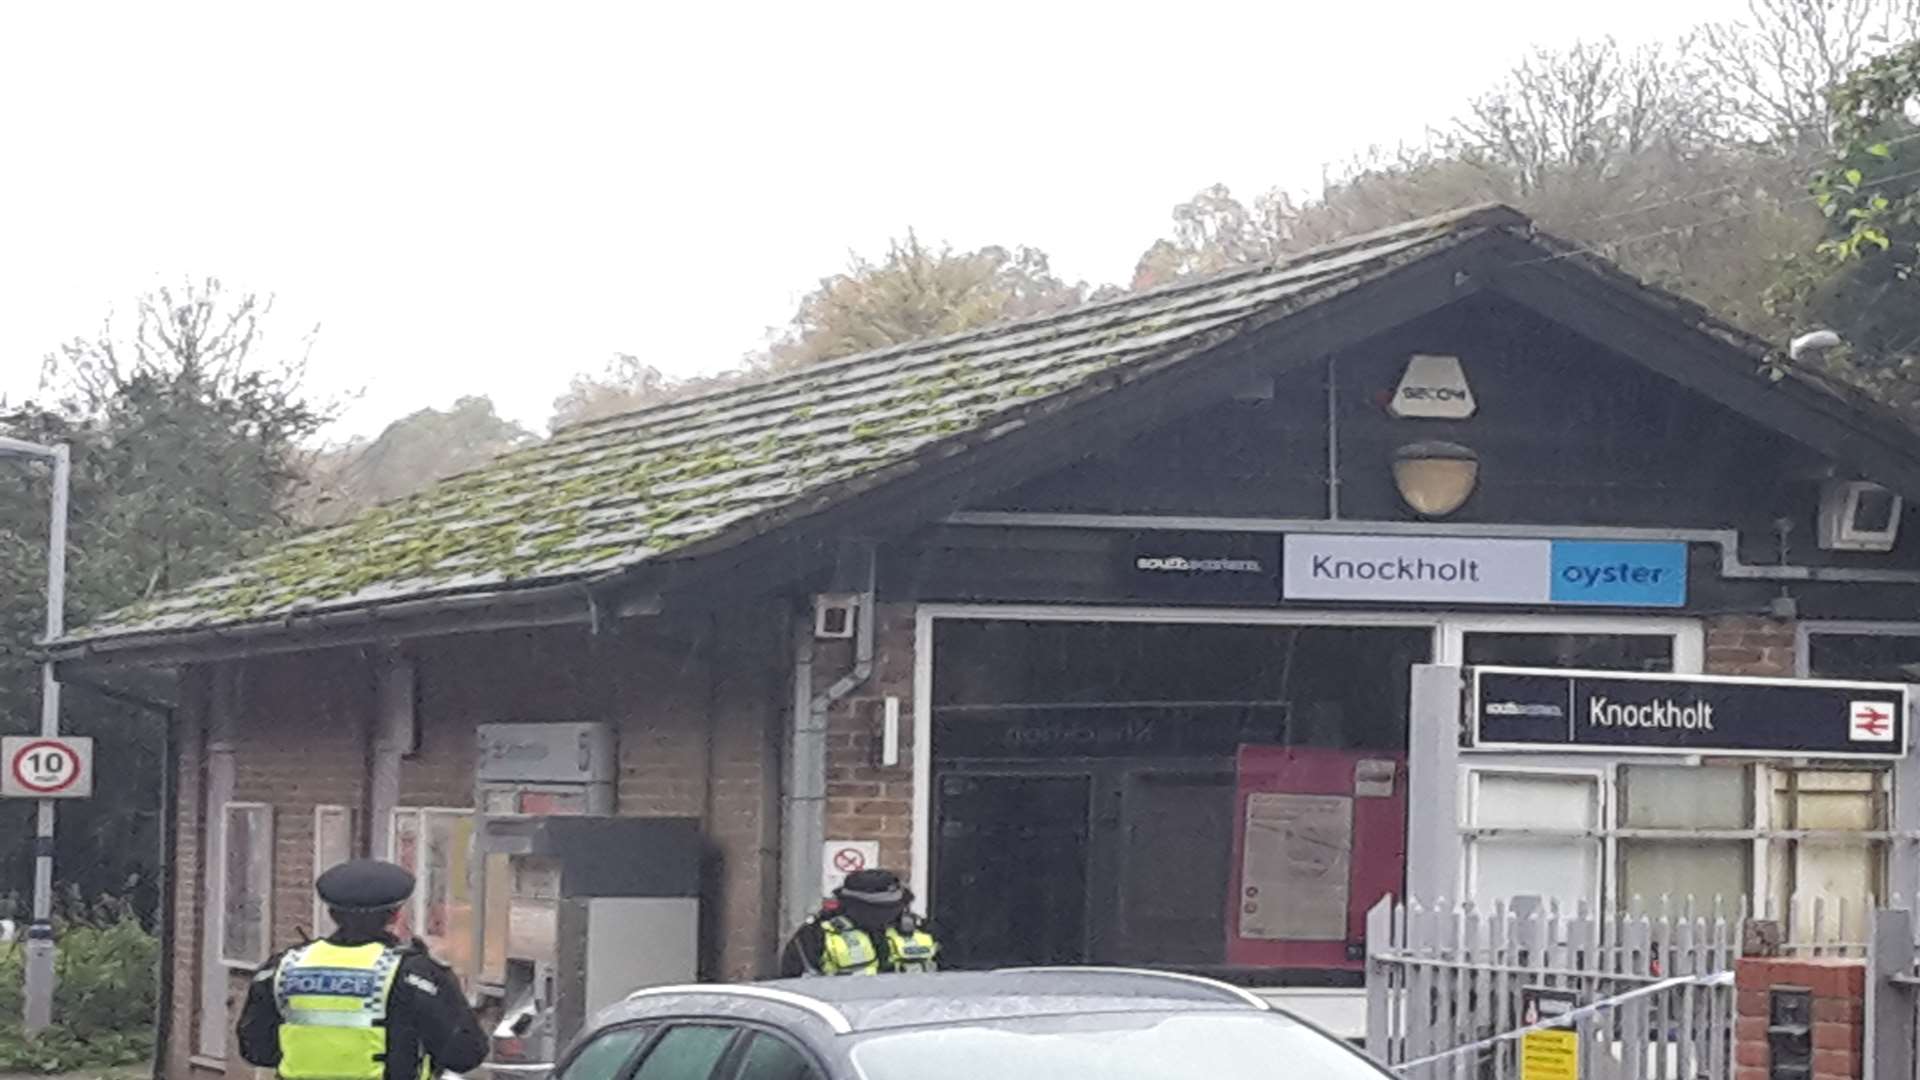 Police at Knockholt station on Monday